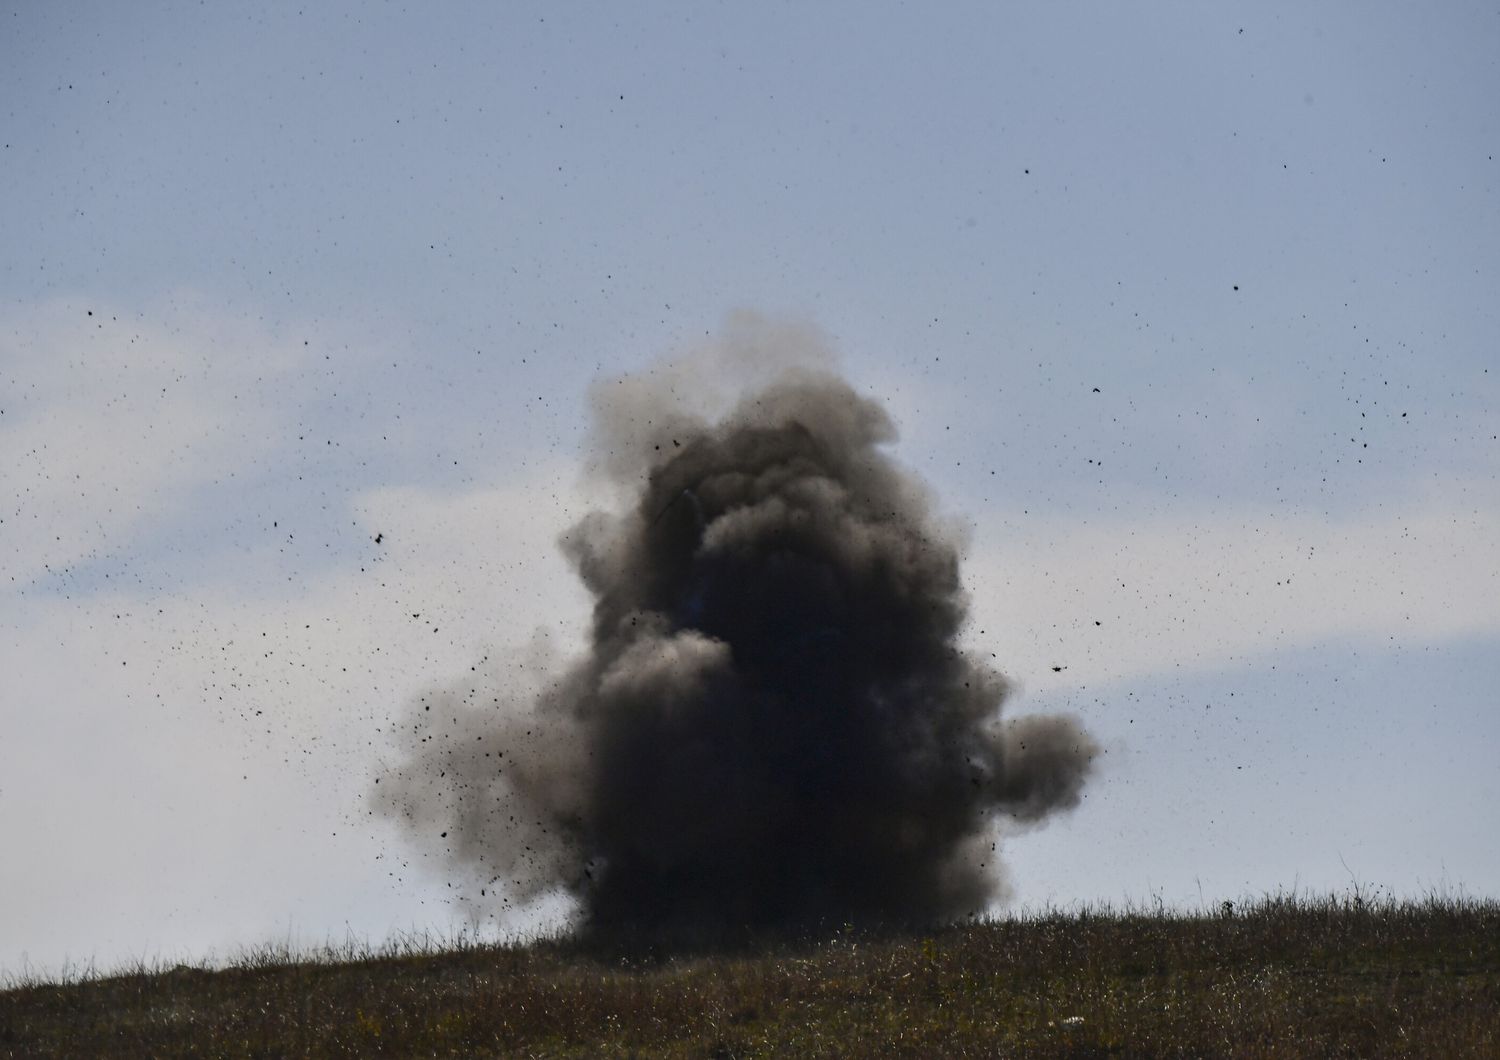 Esplosione controllata di munizioni in Nagorno-Karabakh (immagine di repertorio)